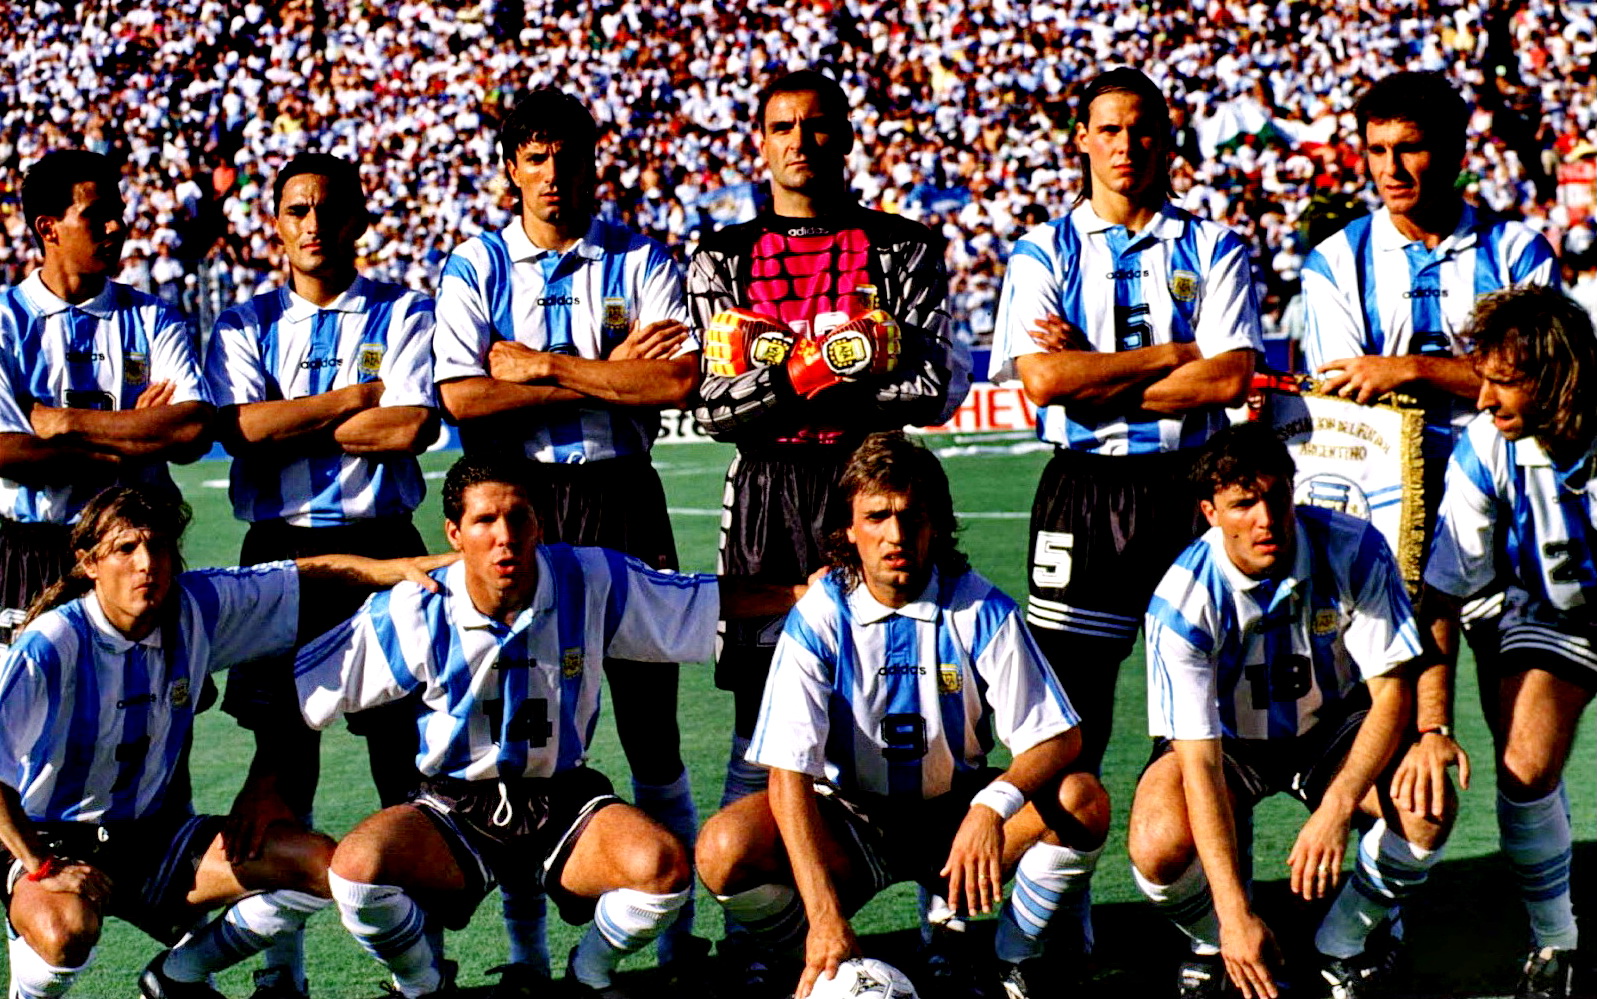 EQUIPOS DE FÚTBOL: SELECCIÓN DE ARGENTINA en la temporada 1993-94